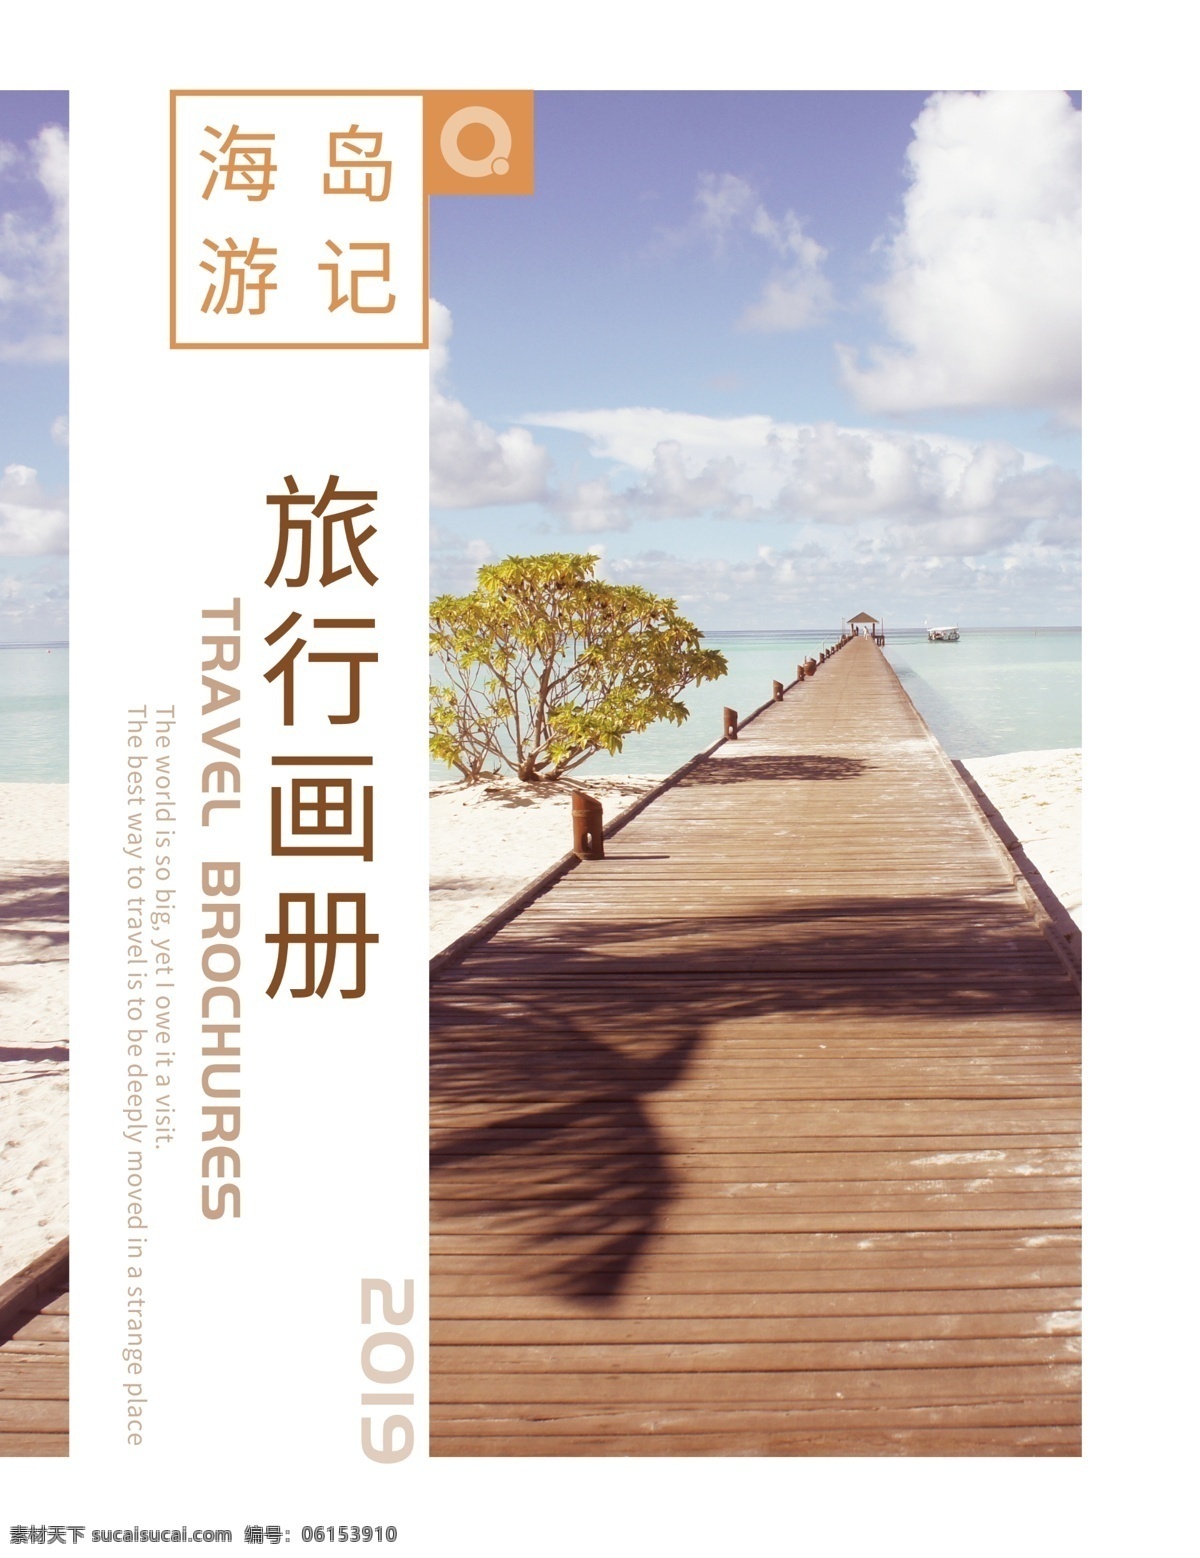 海岛 游记 旅行 宣传画册 封面 马尔代夫 海南岛 旅游 宣传册 画册